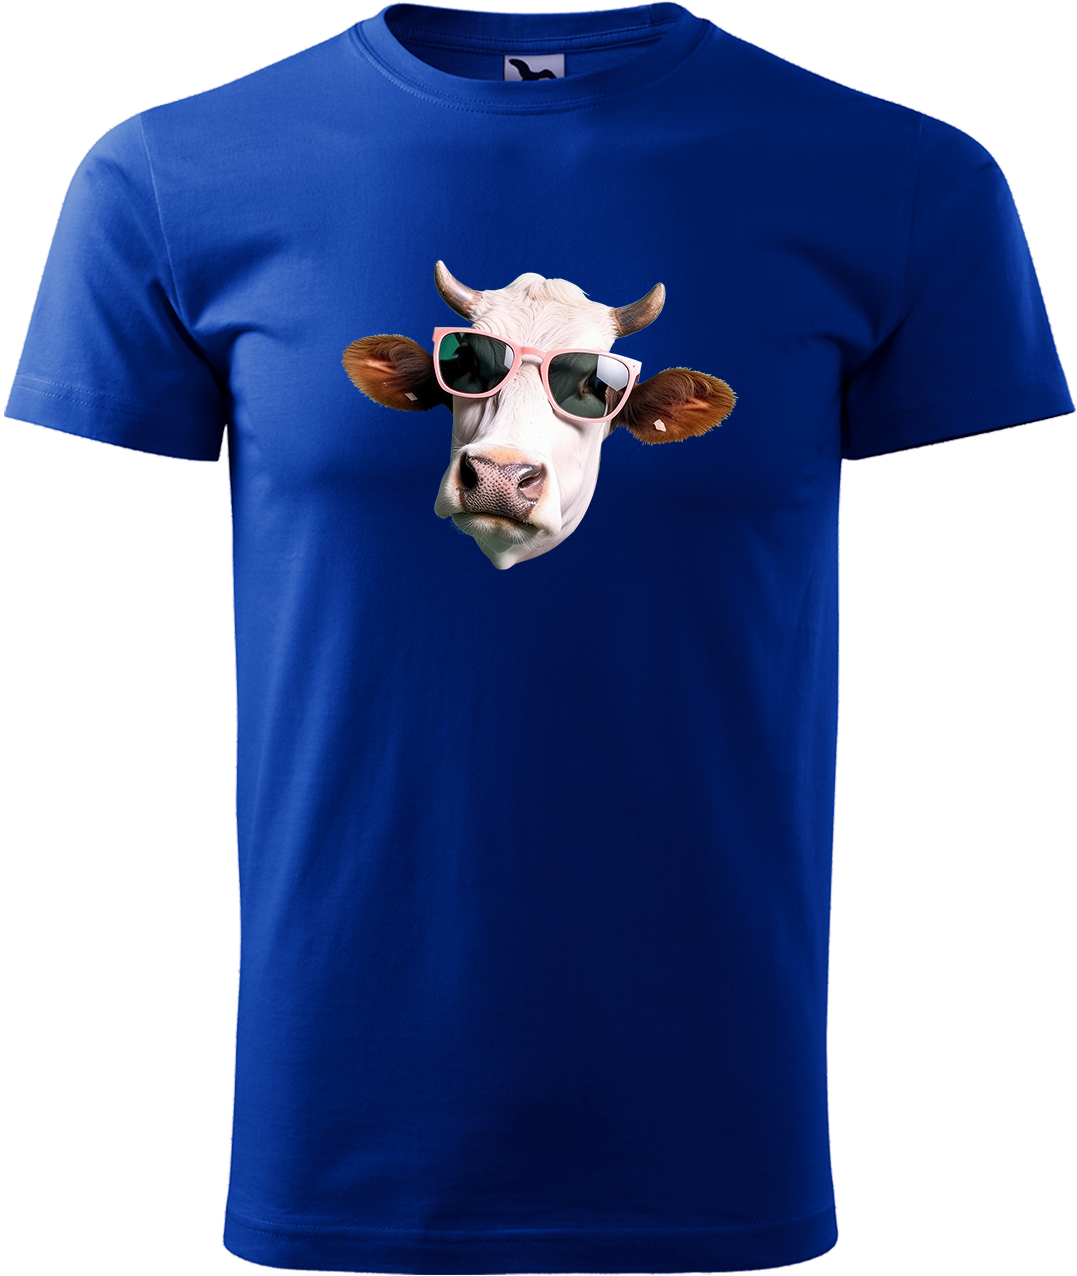 Pánské tričko s krávou - Kráva v brýlích Velikost: XL, Barva: Královská modrá (05), Střih: pánský